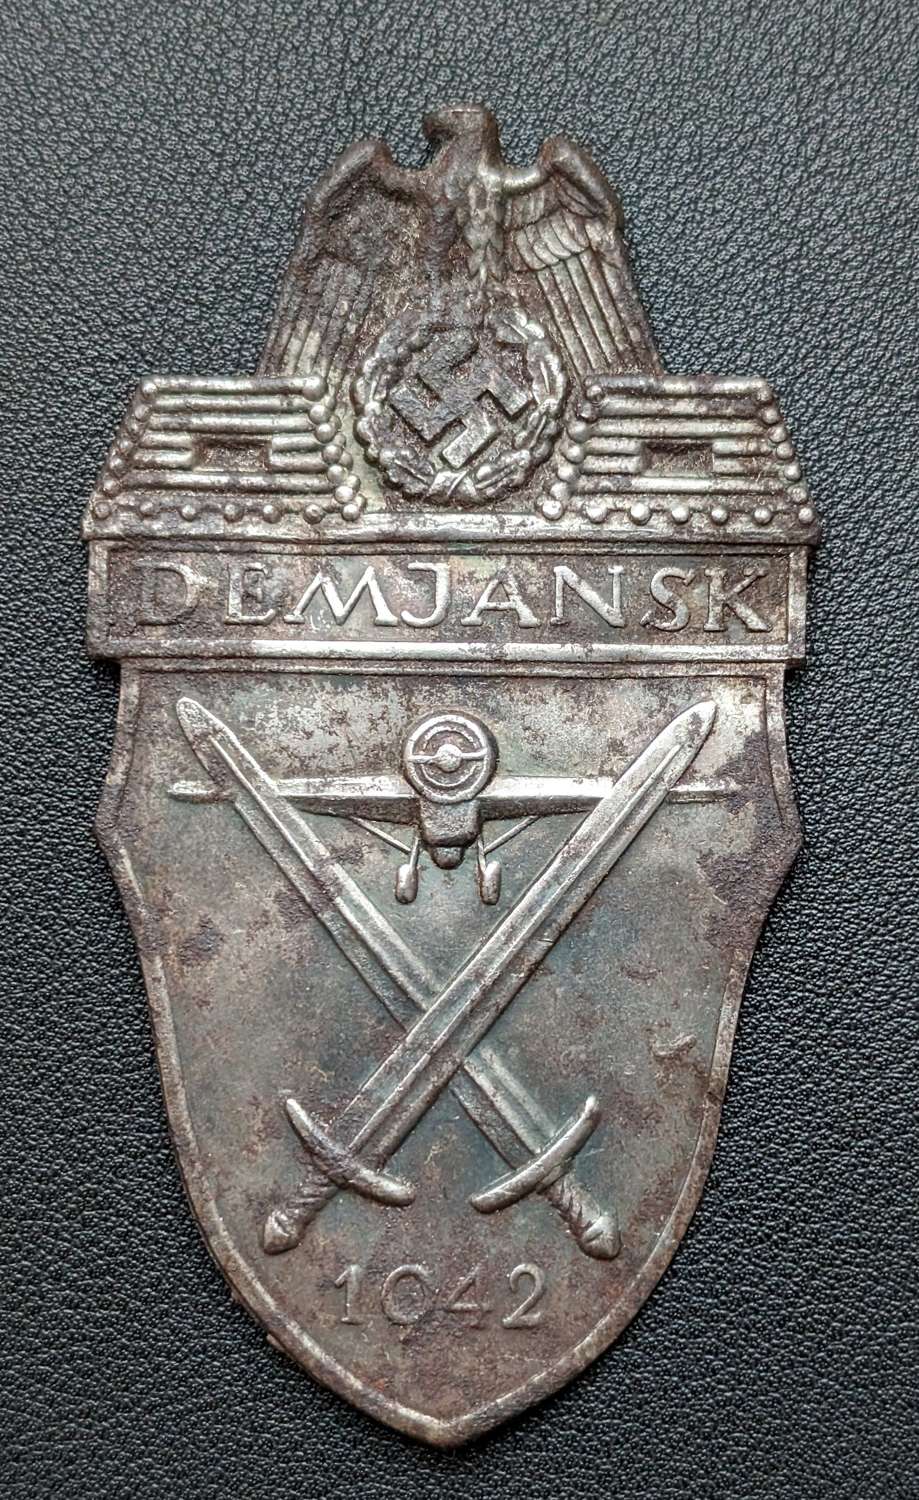 Demjansk Campaign Shield Unfinished